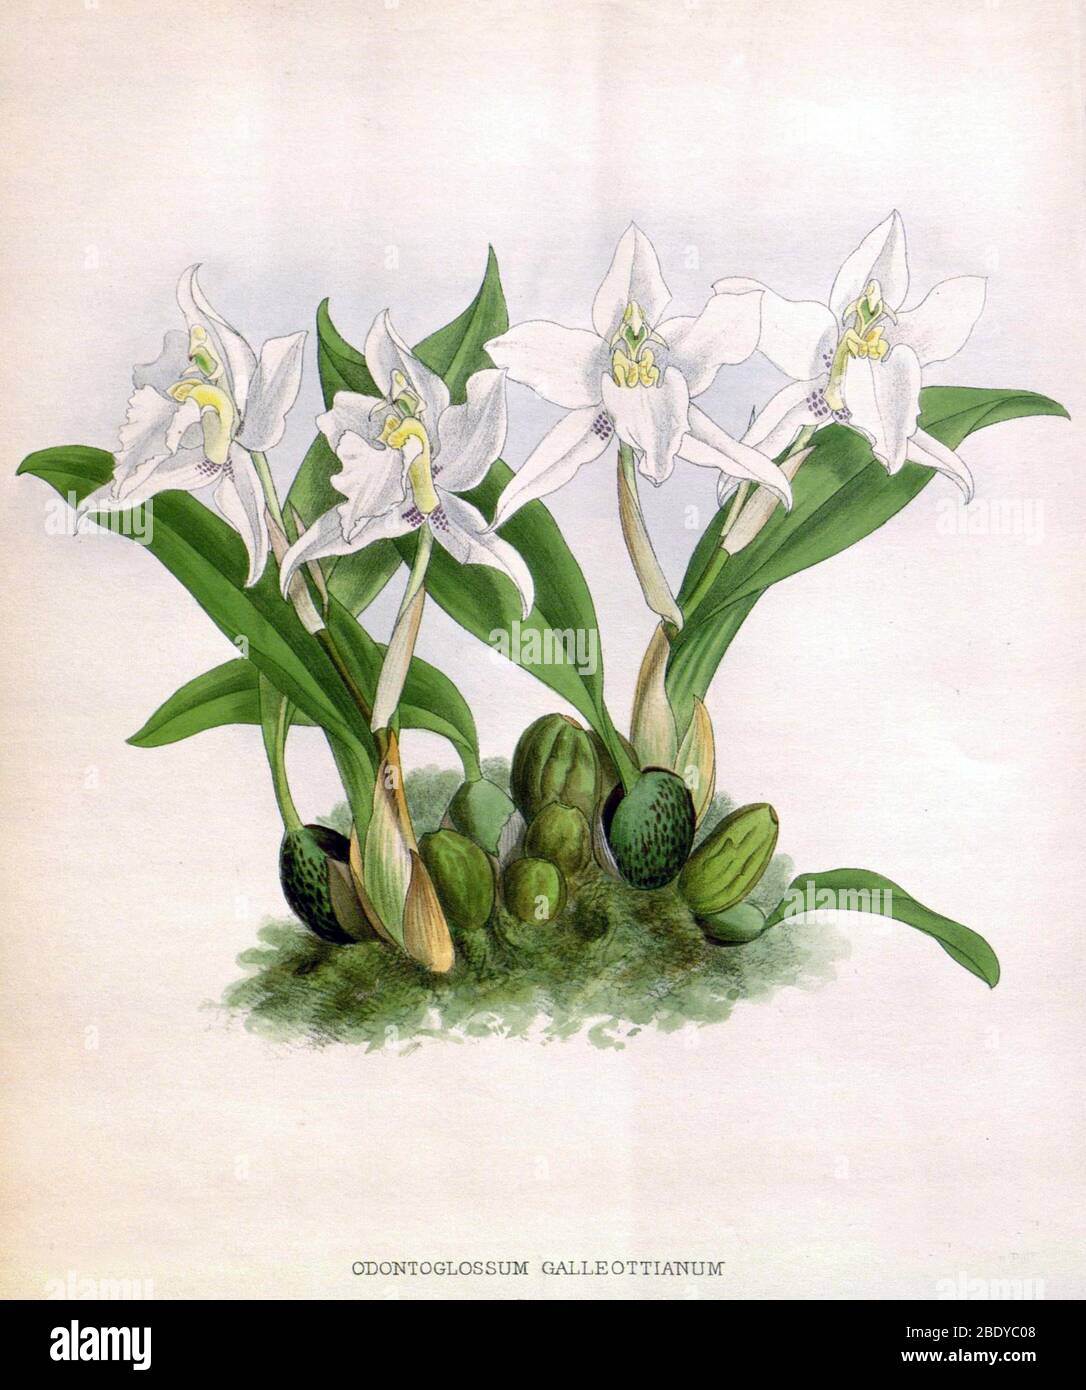 Orchidee, Odontoglossum galleottianum, 1891 Stockfoto